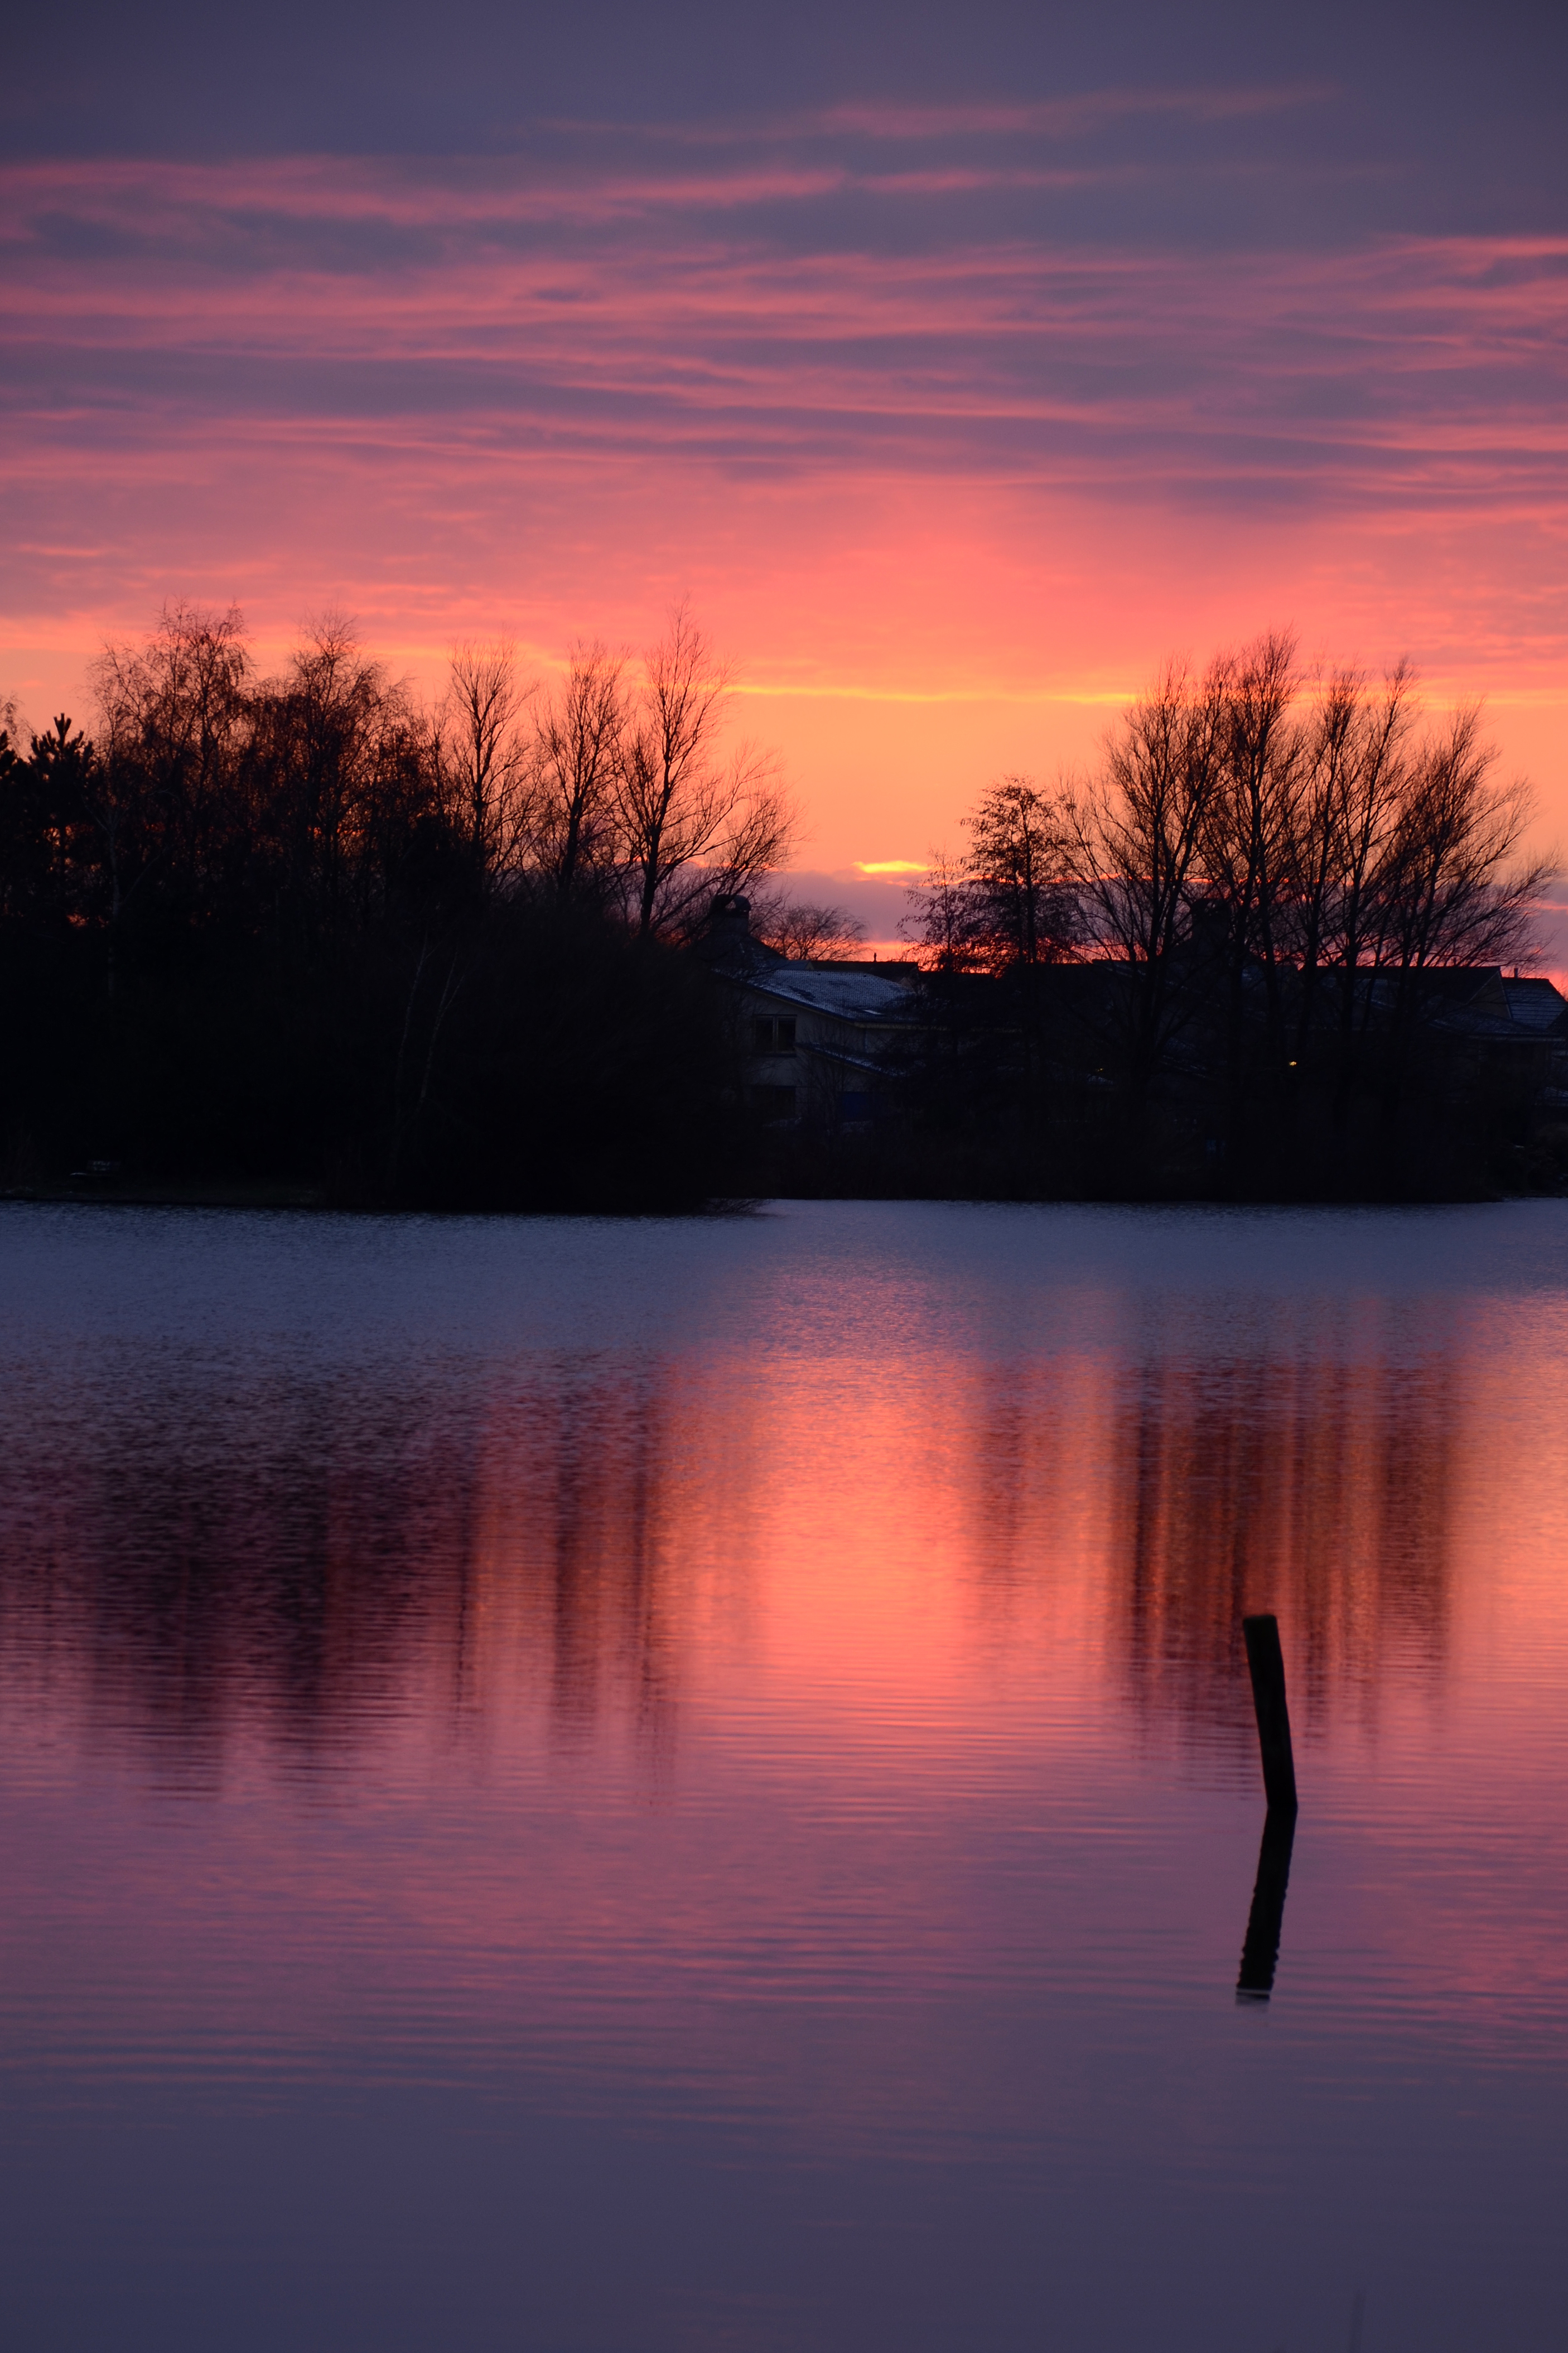 sunset at the Rietplas, Emmen - Colors (8380917710)